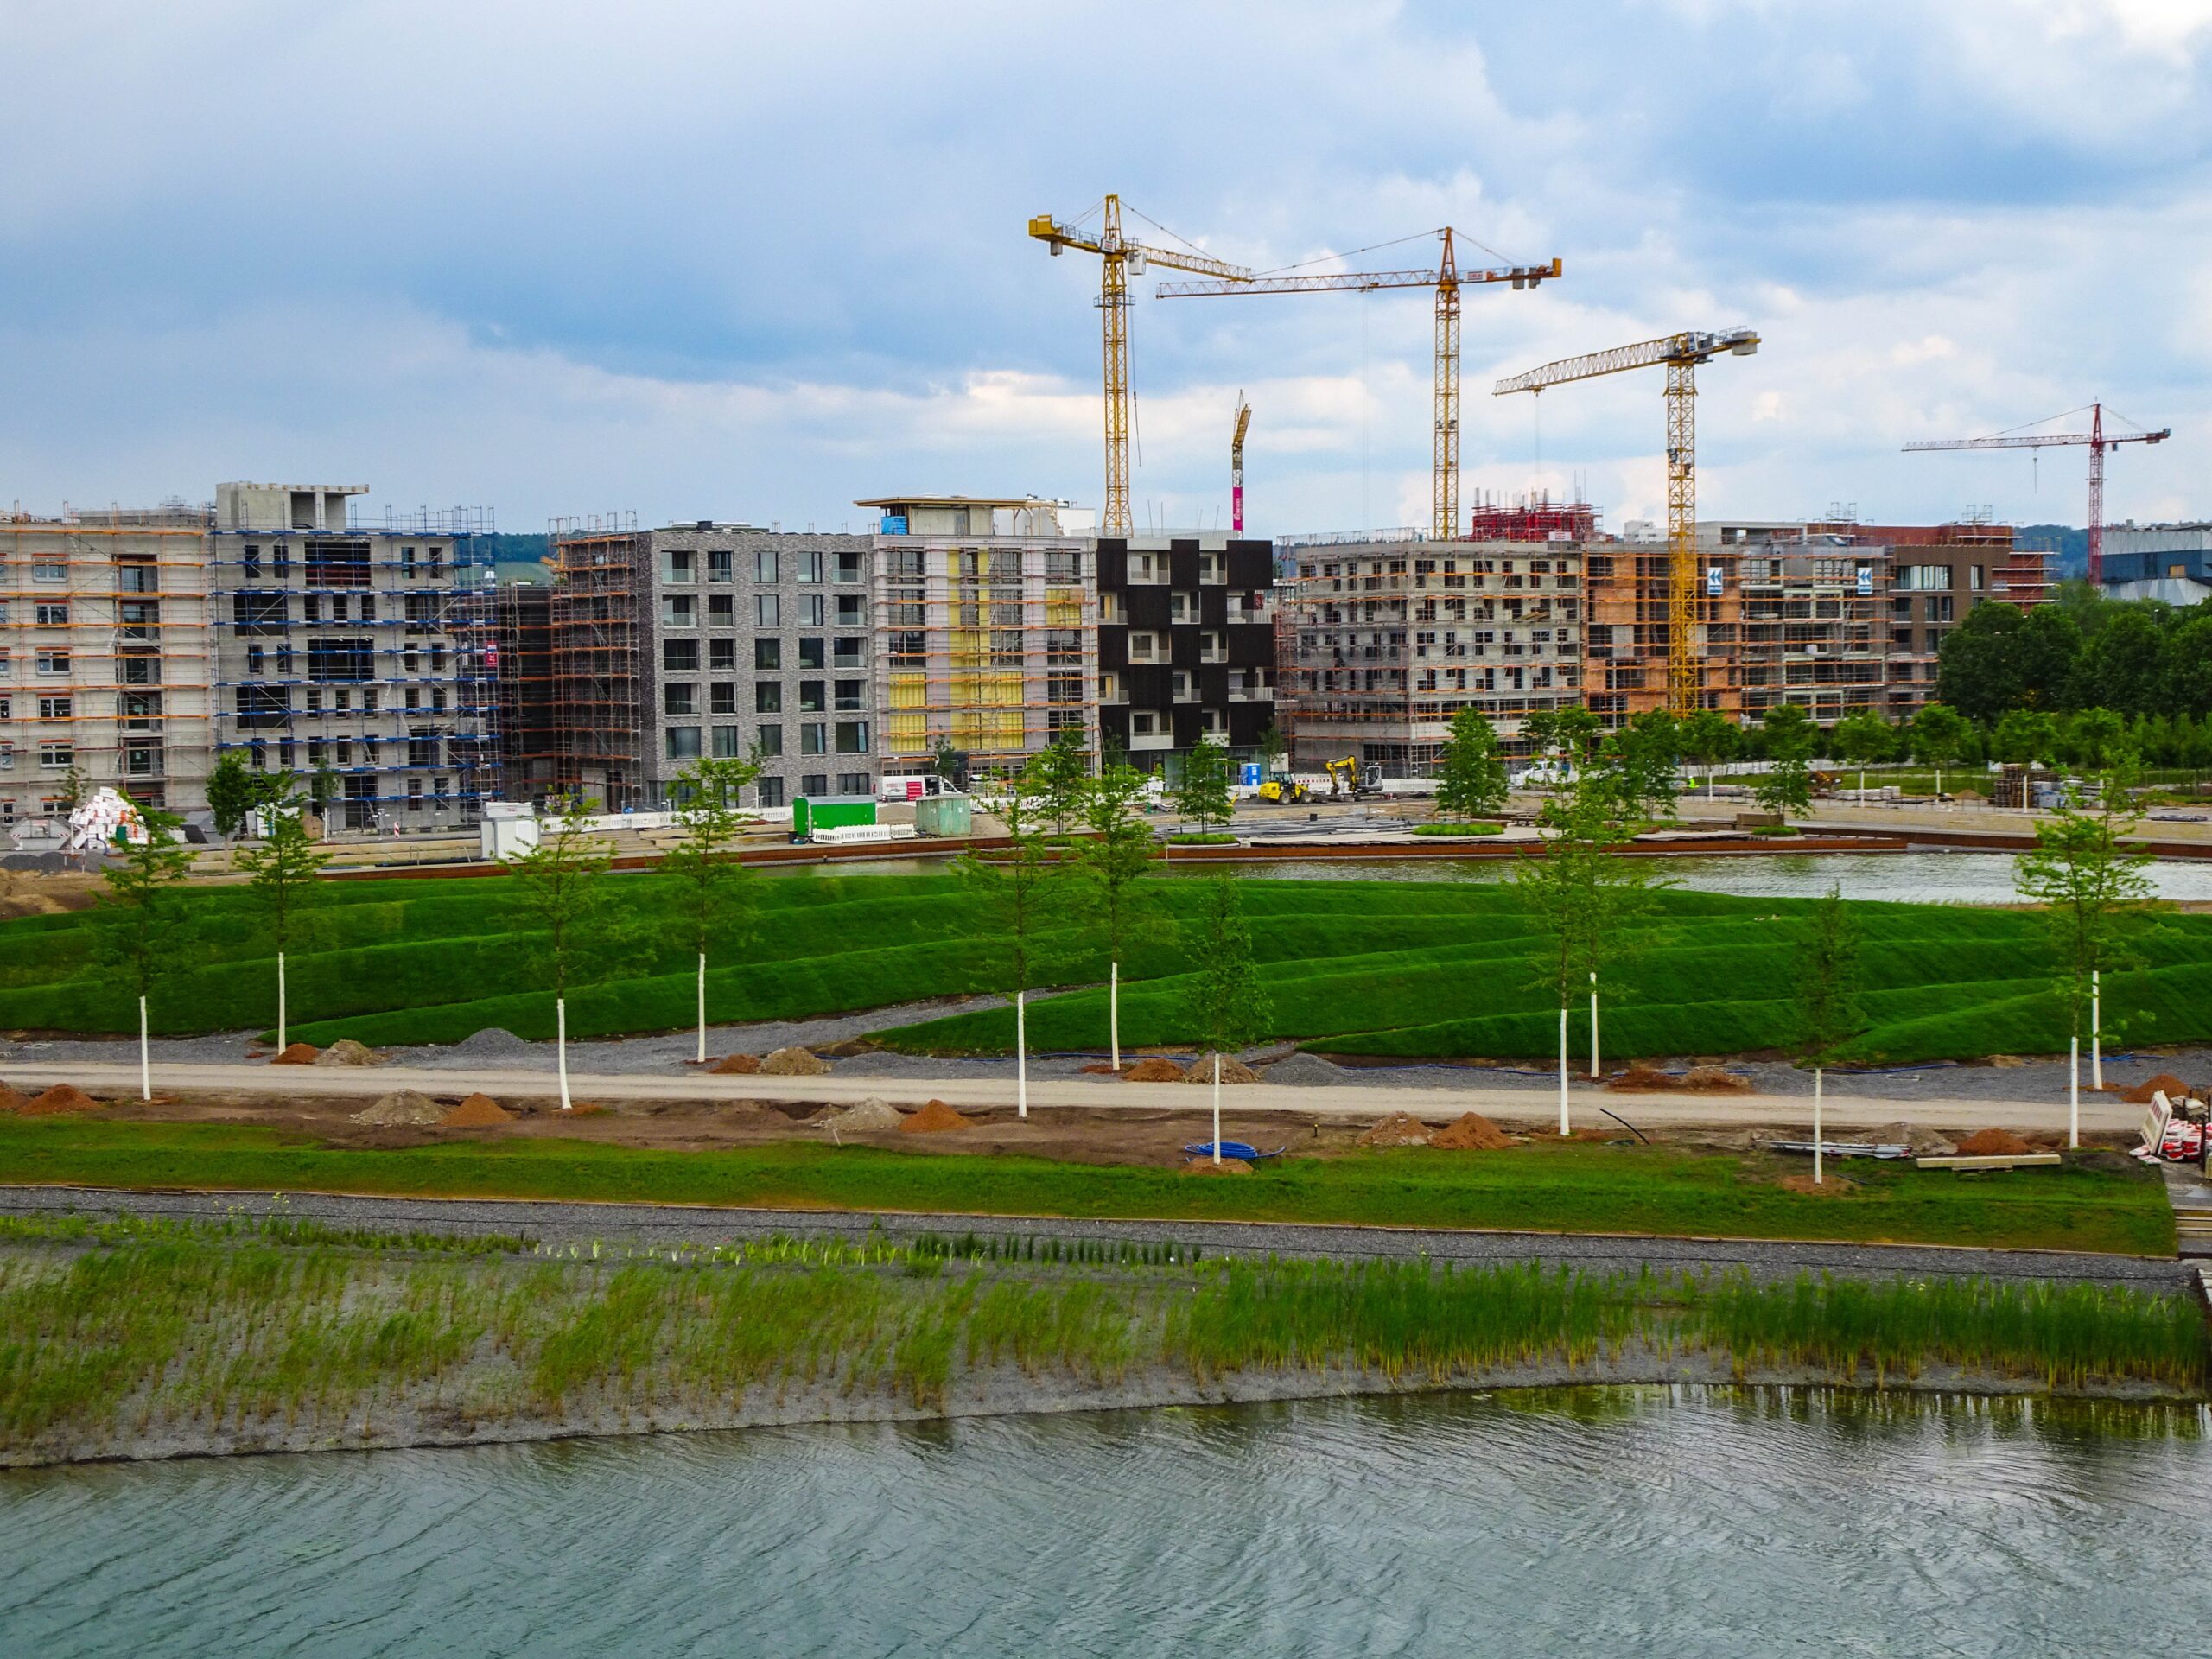 Vertrag für Hamburg wird erneuert – gutes Signal für den Wohnungsmarkt